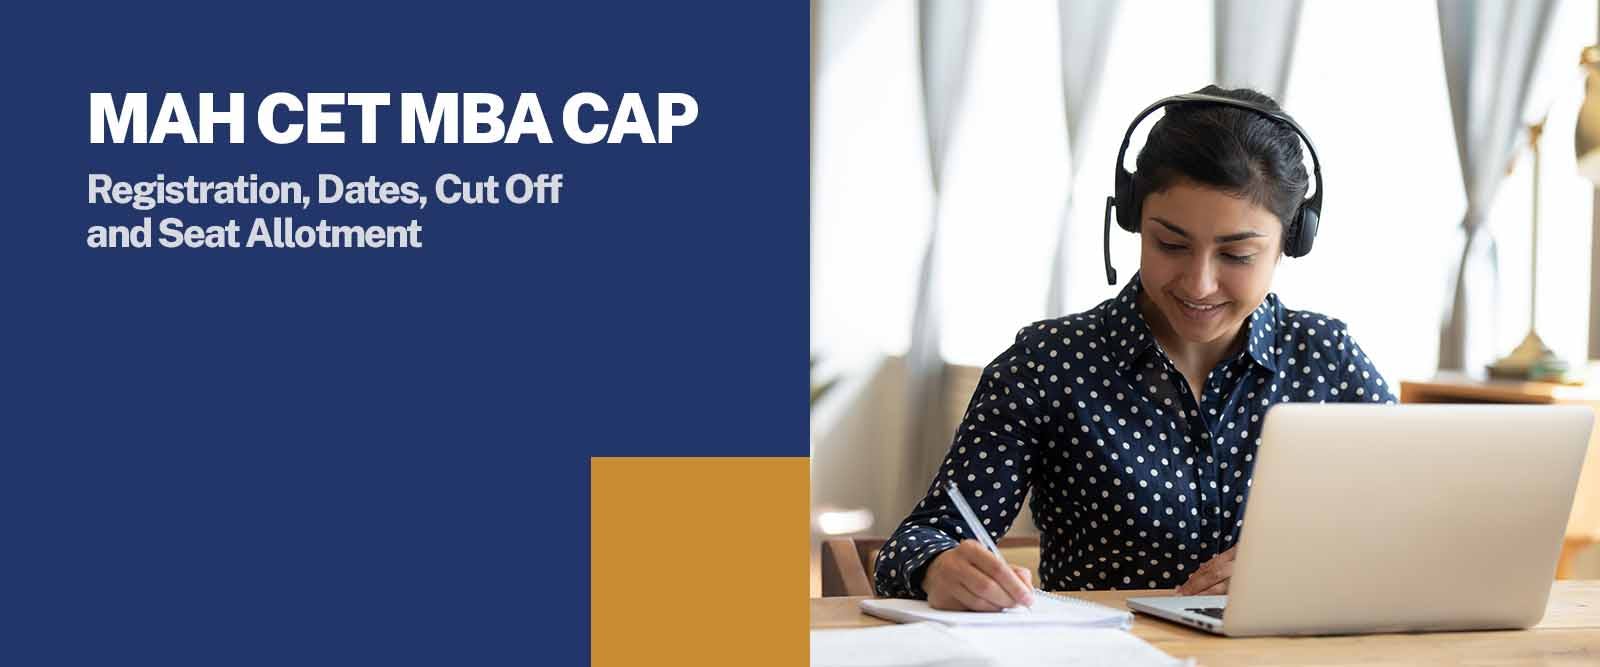 MAH CET MBA CAP Registration, Dates, Cut Off